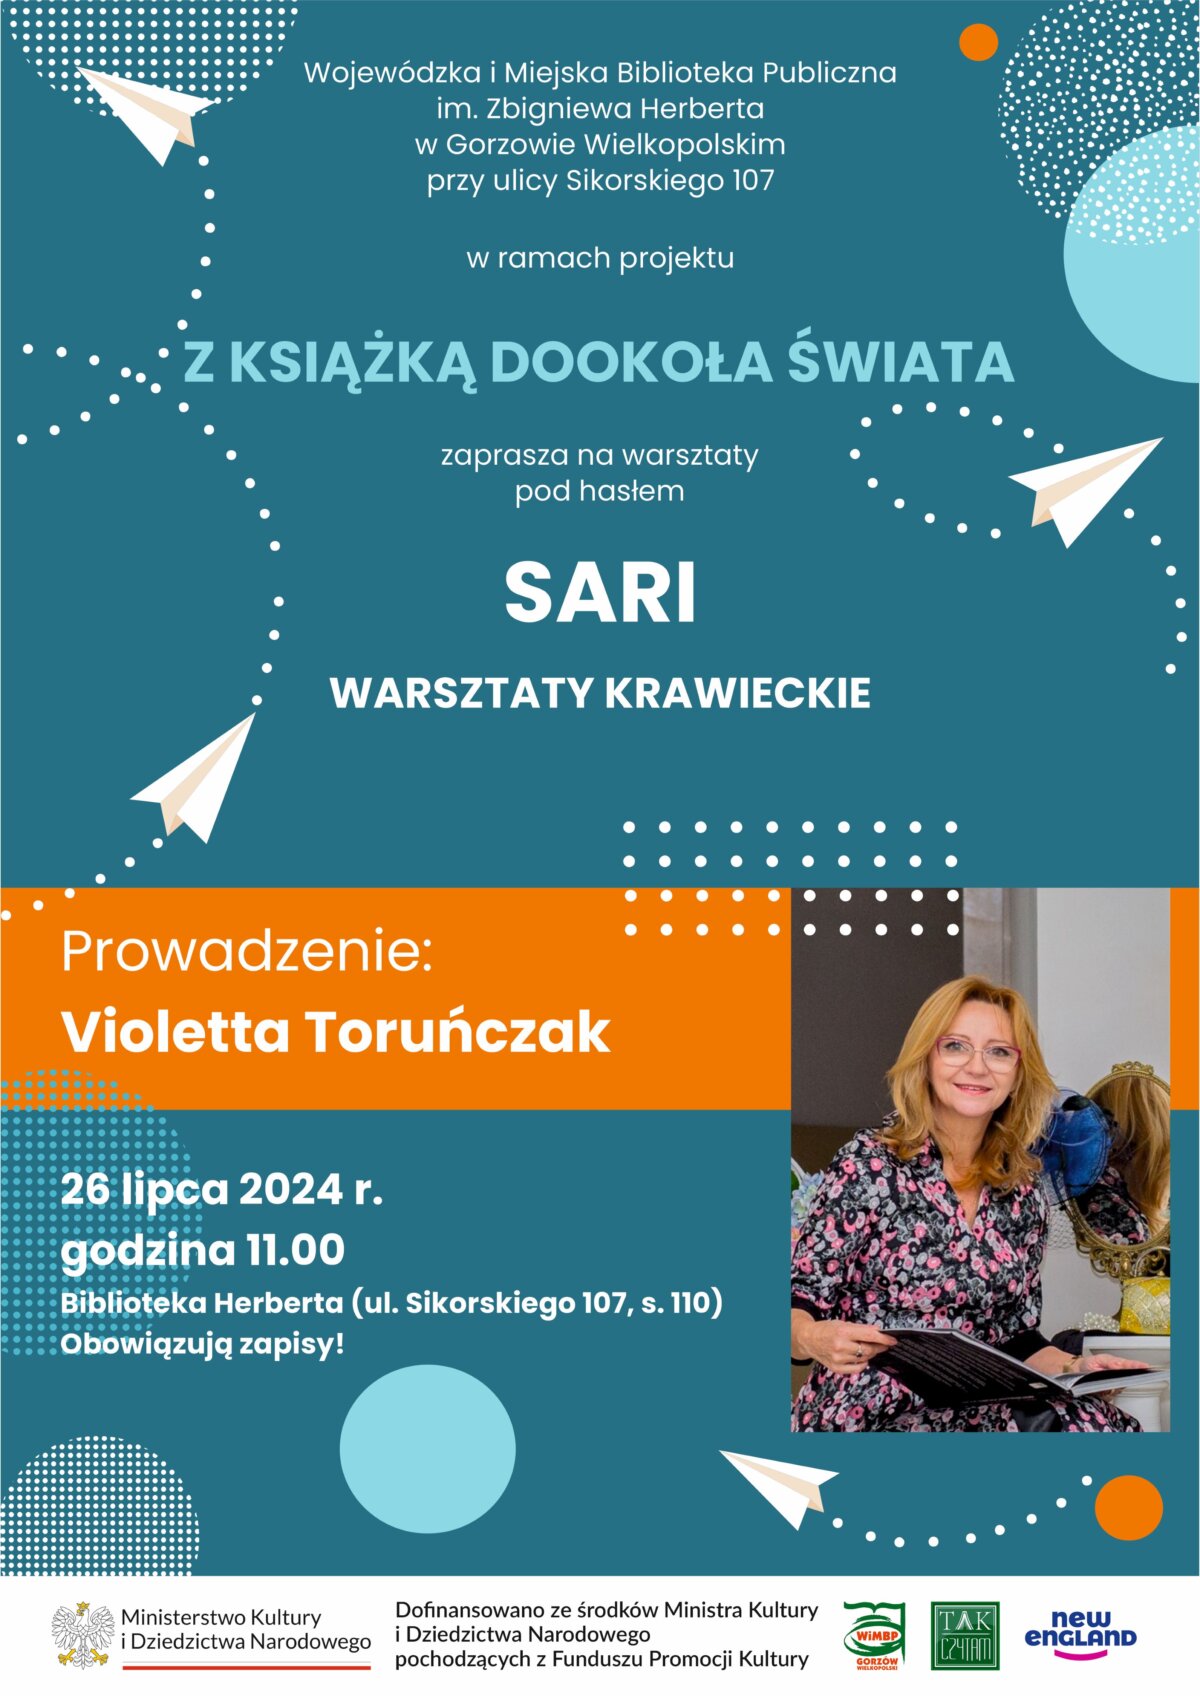 plakat promujący wydarzenie - spotkanie z Violettą Toruńczak.